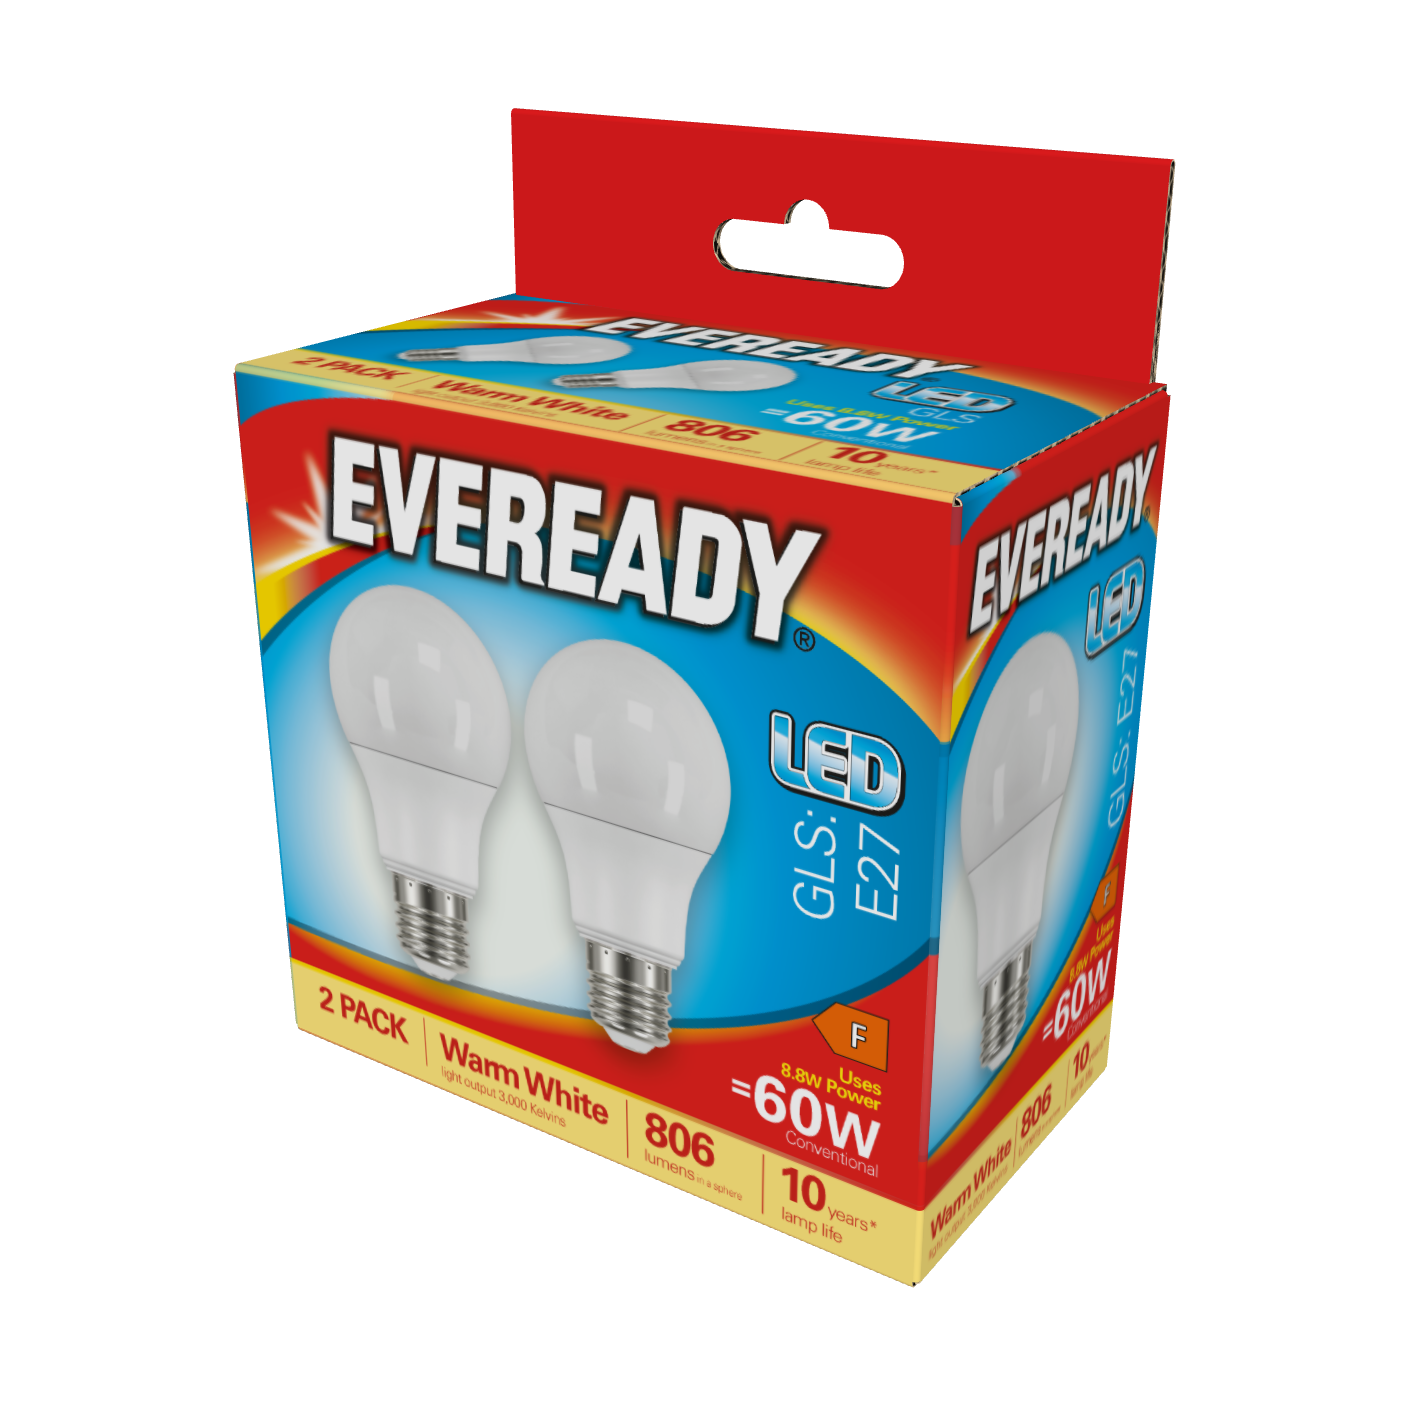 Eveready LED GLS E27 (ES) 806lm 8,8W 3.000K (Warmweiß), 2er-Box